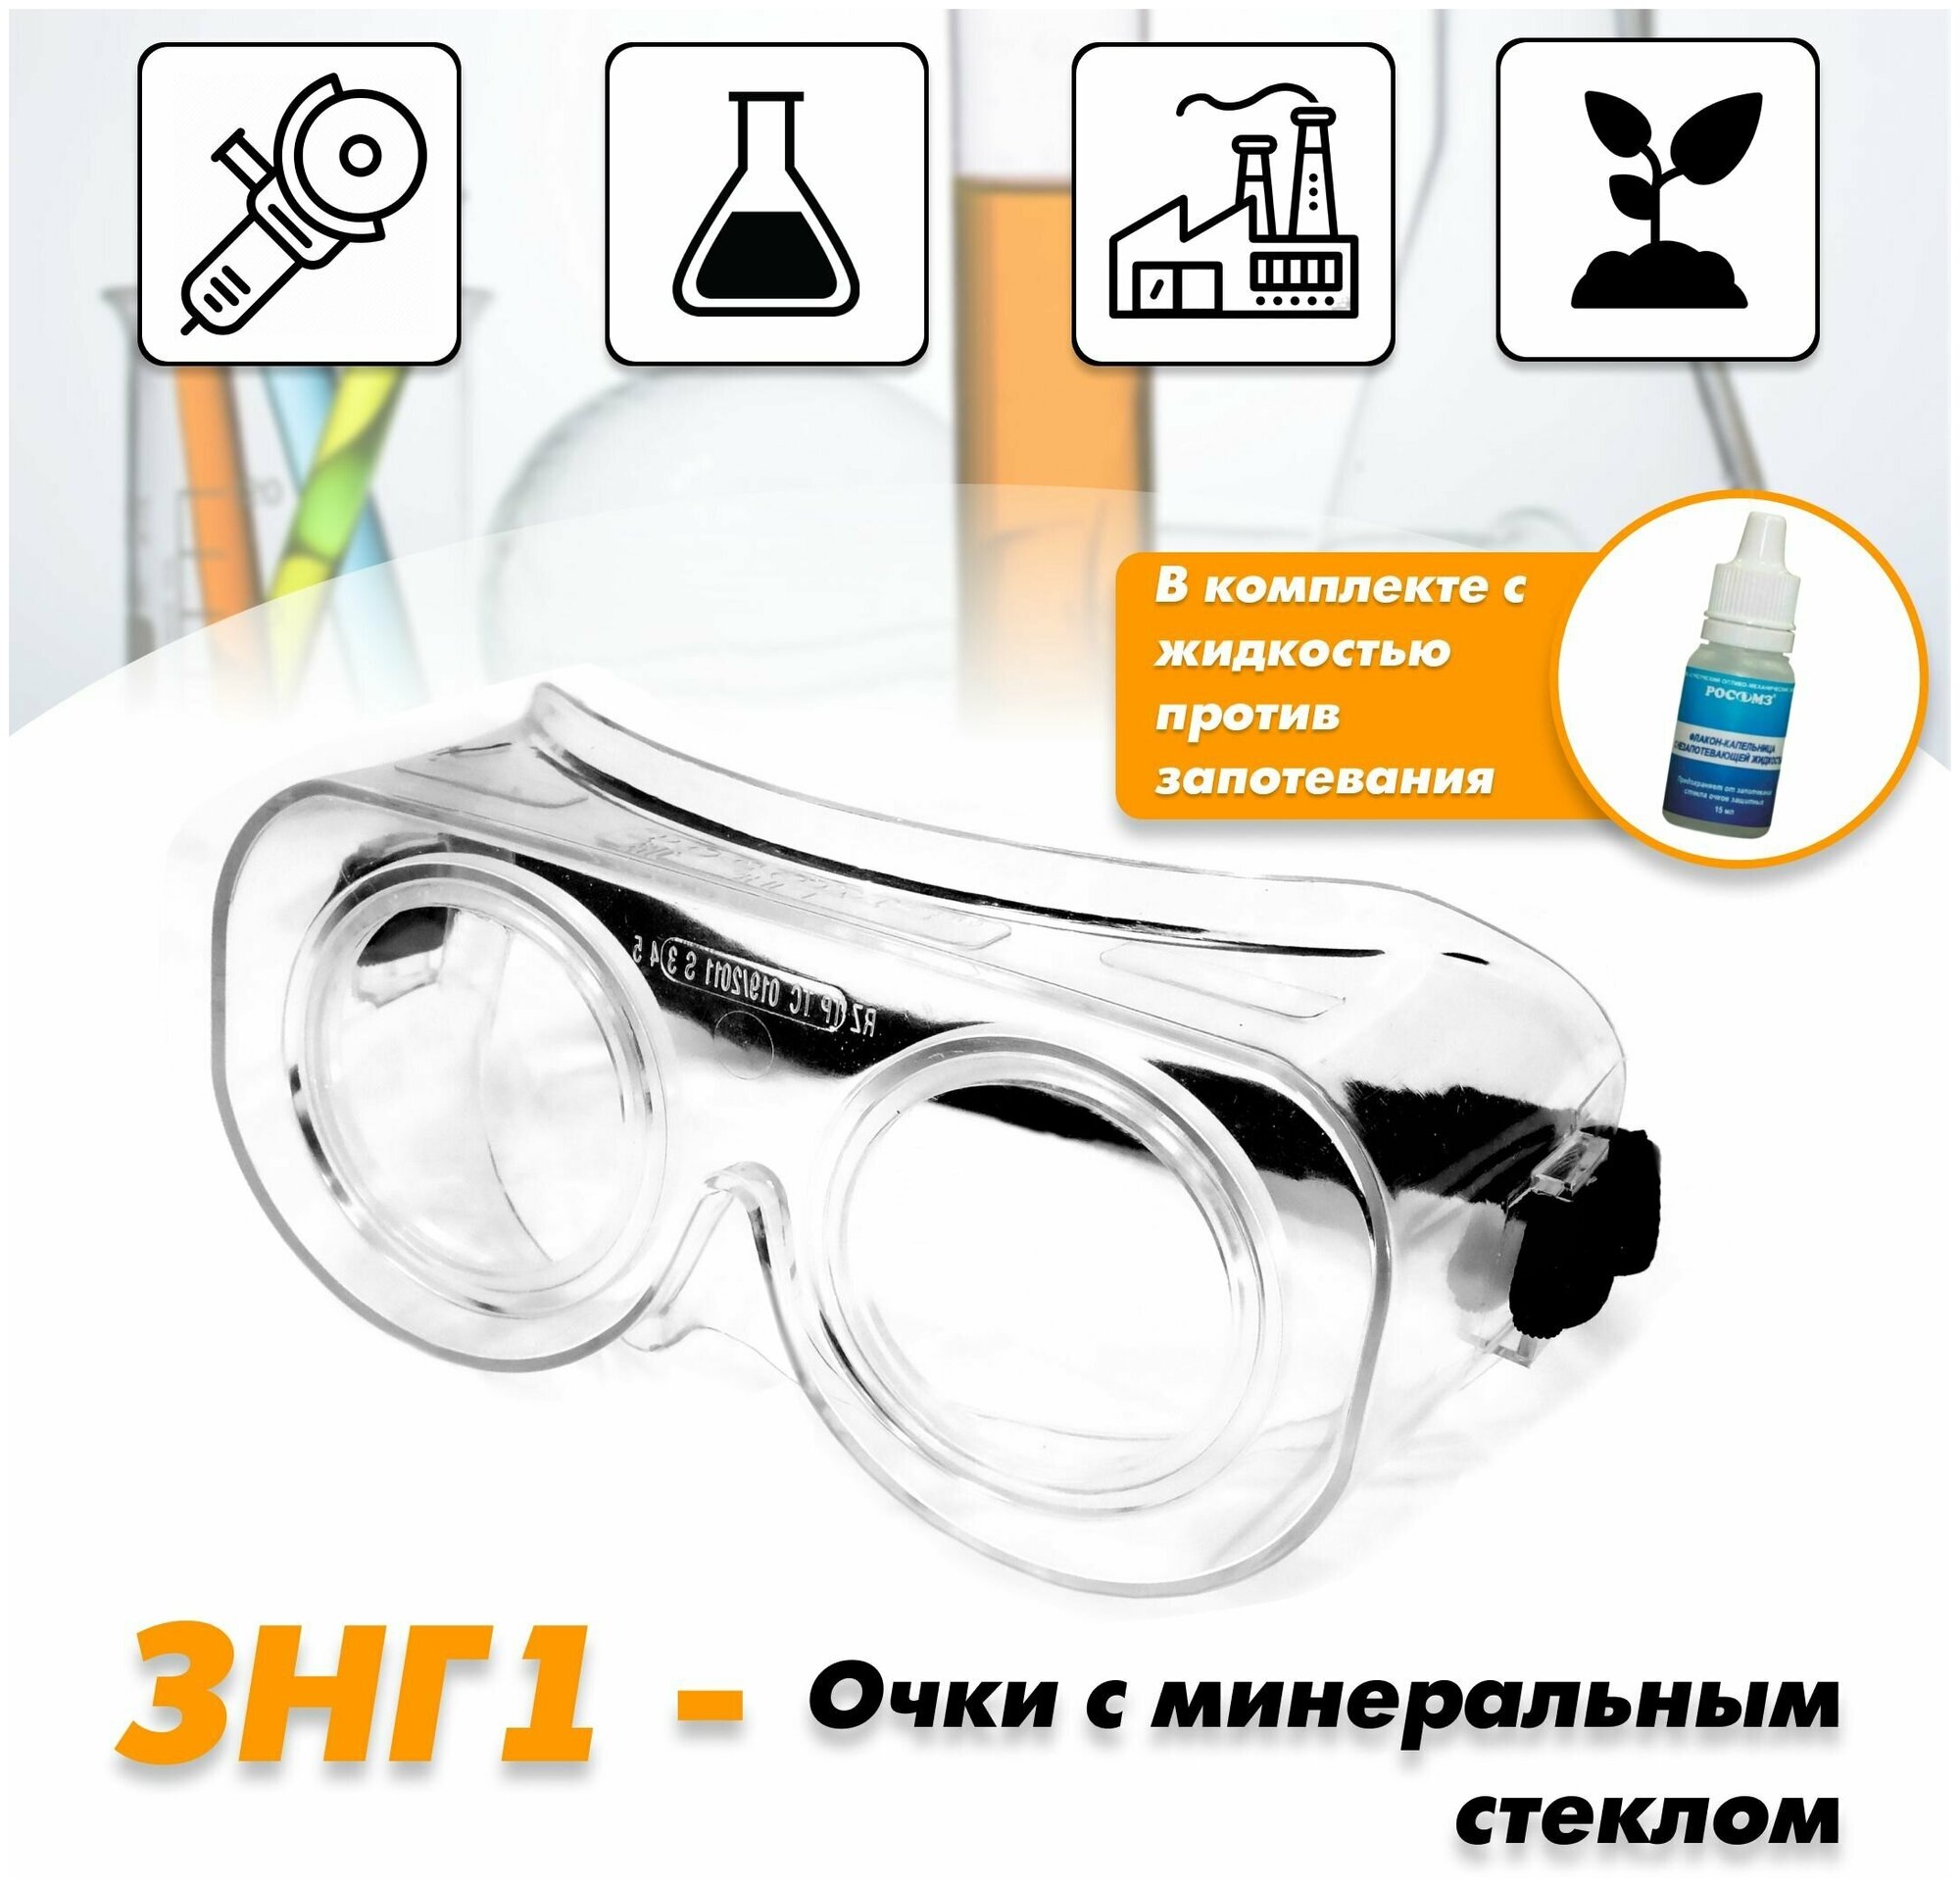 Очки защитные / строительные / медицинские / маска защитная РОСОМЗ ЗНГ1 минеральное стекло арт. 22108